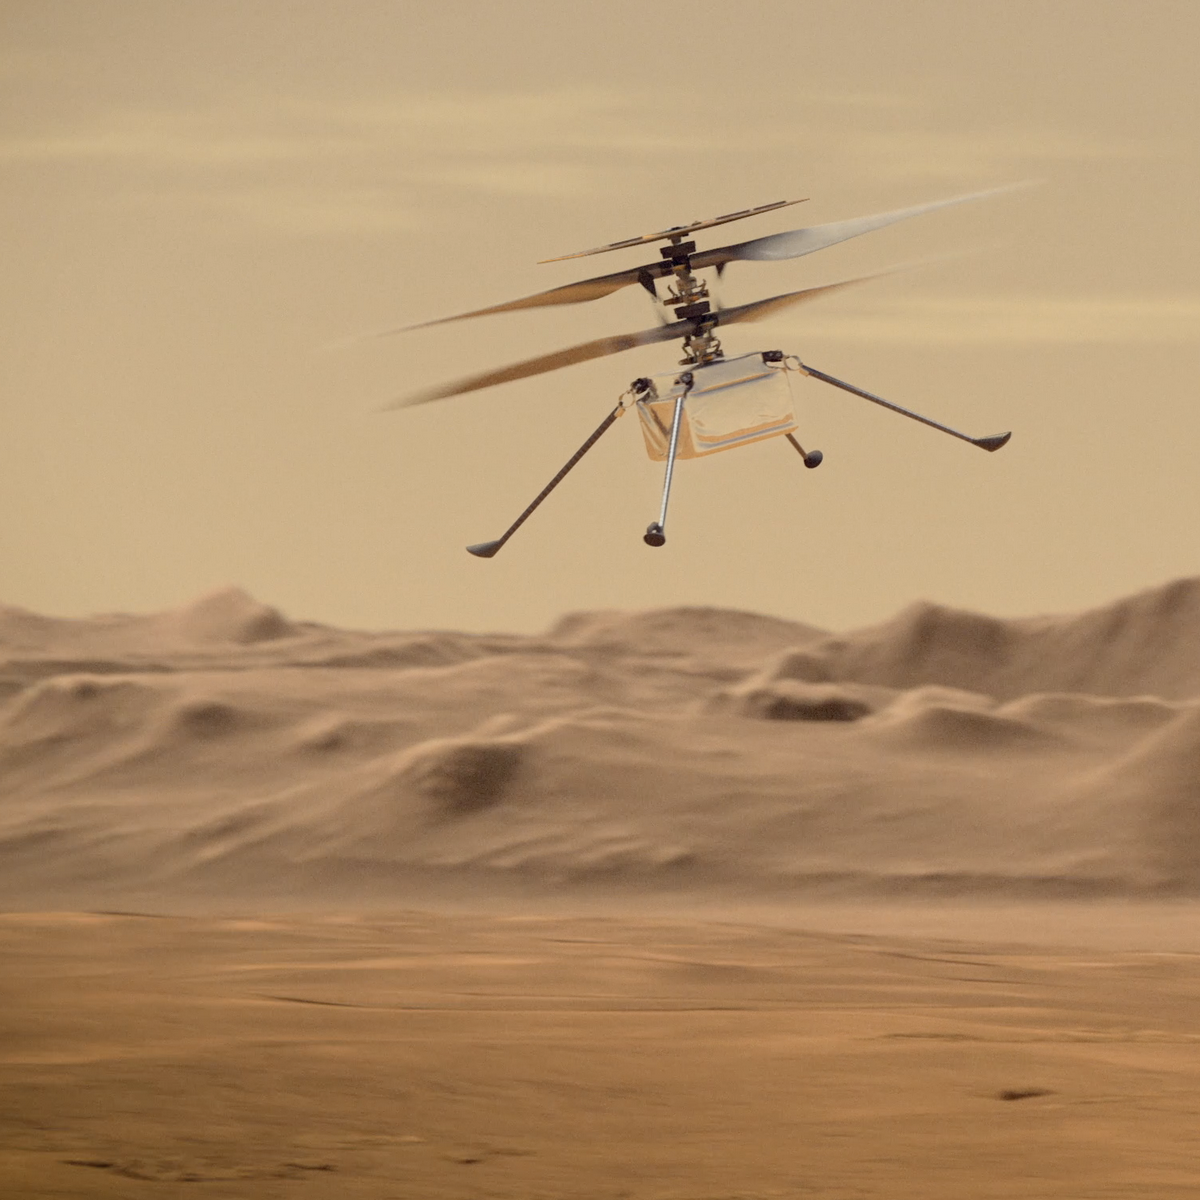 Így röpköd majd a ritka marsi légkörben a földi helikopter